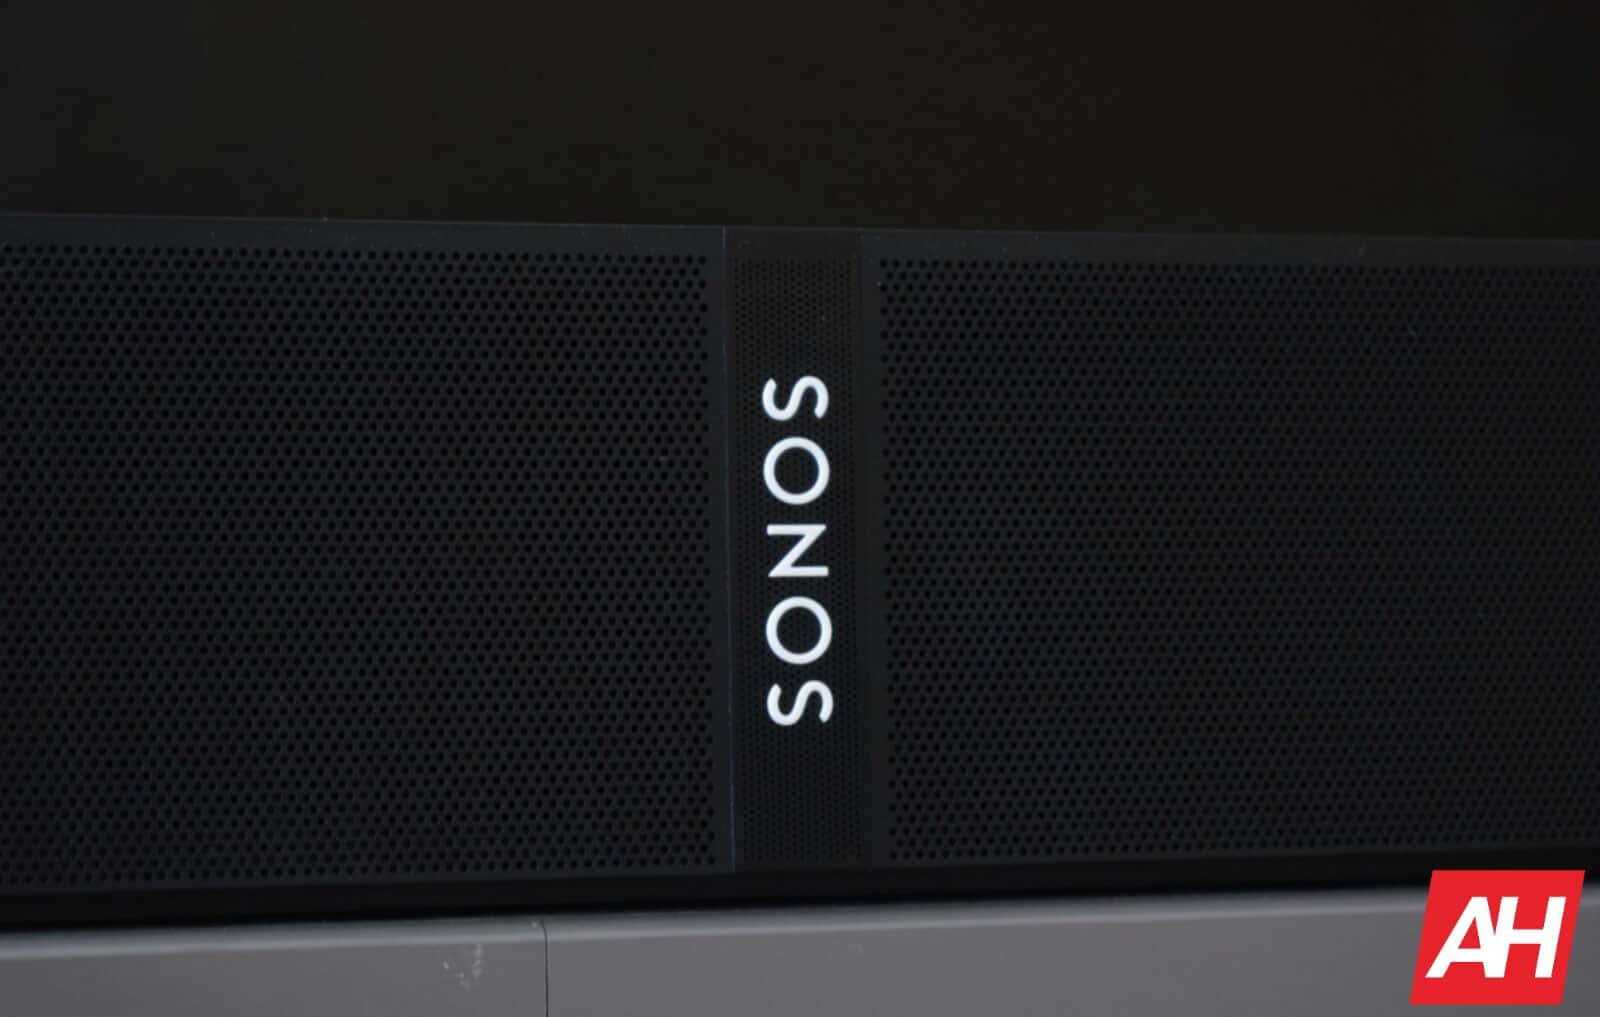 Sonos выпускает новое приложение в июне для поддержки аудио высокого разрешения